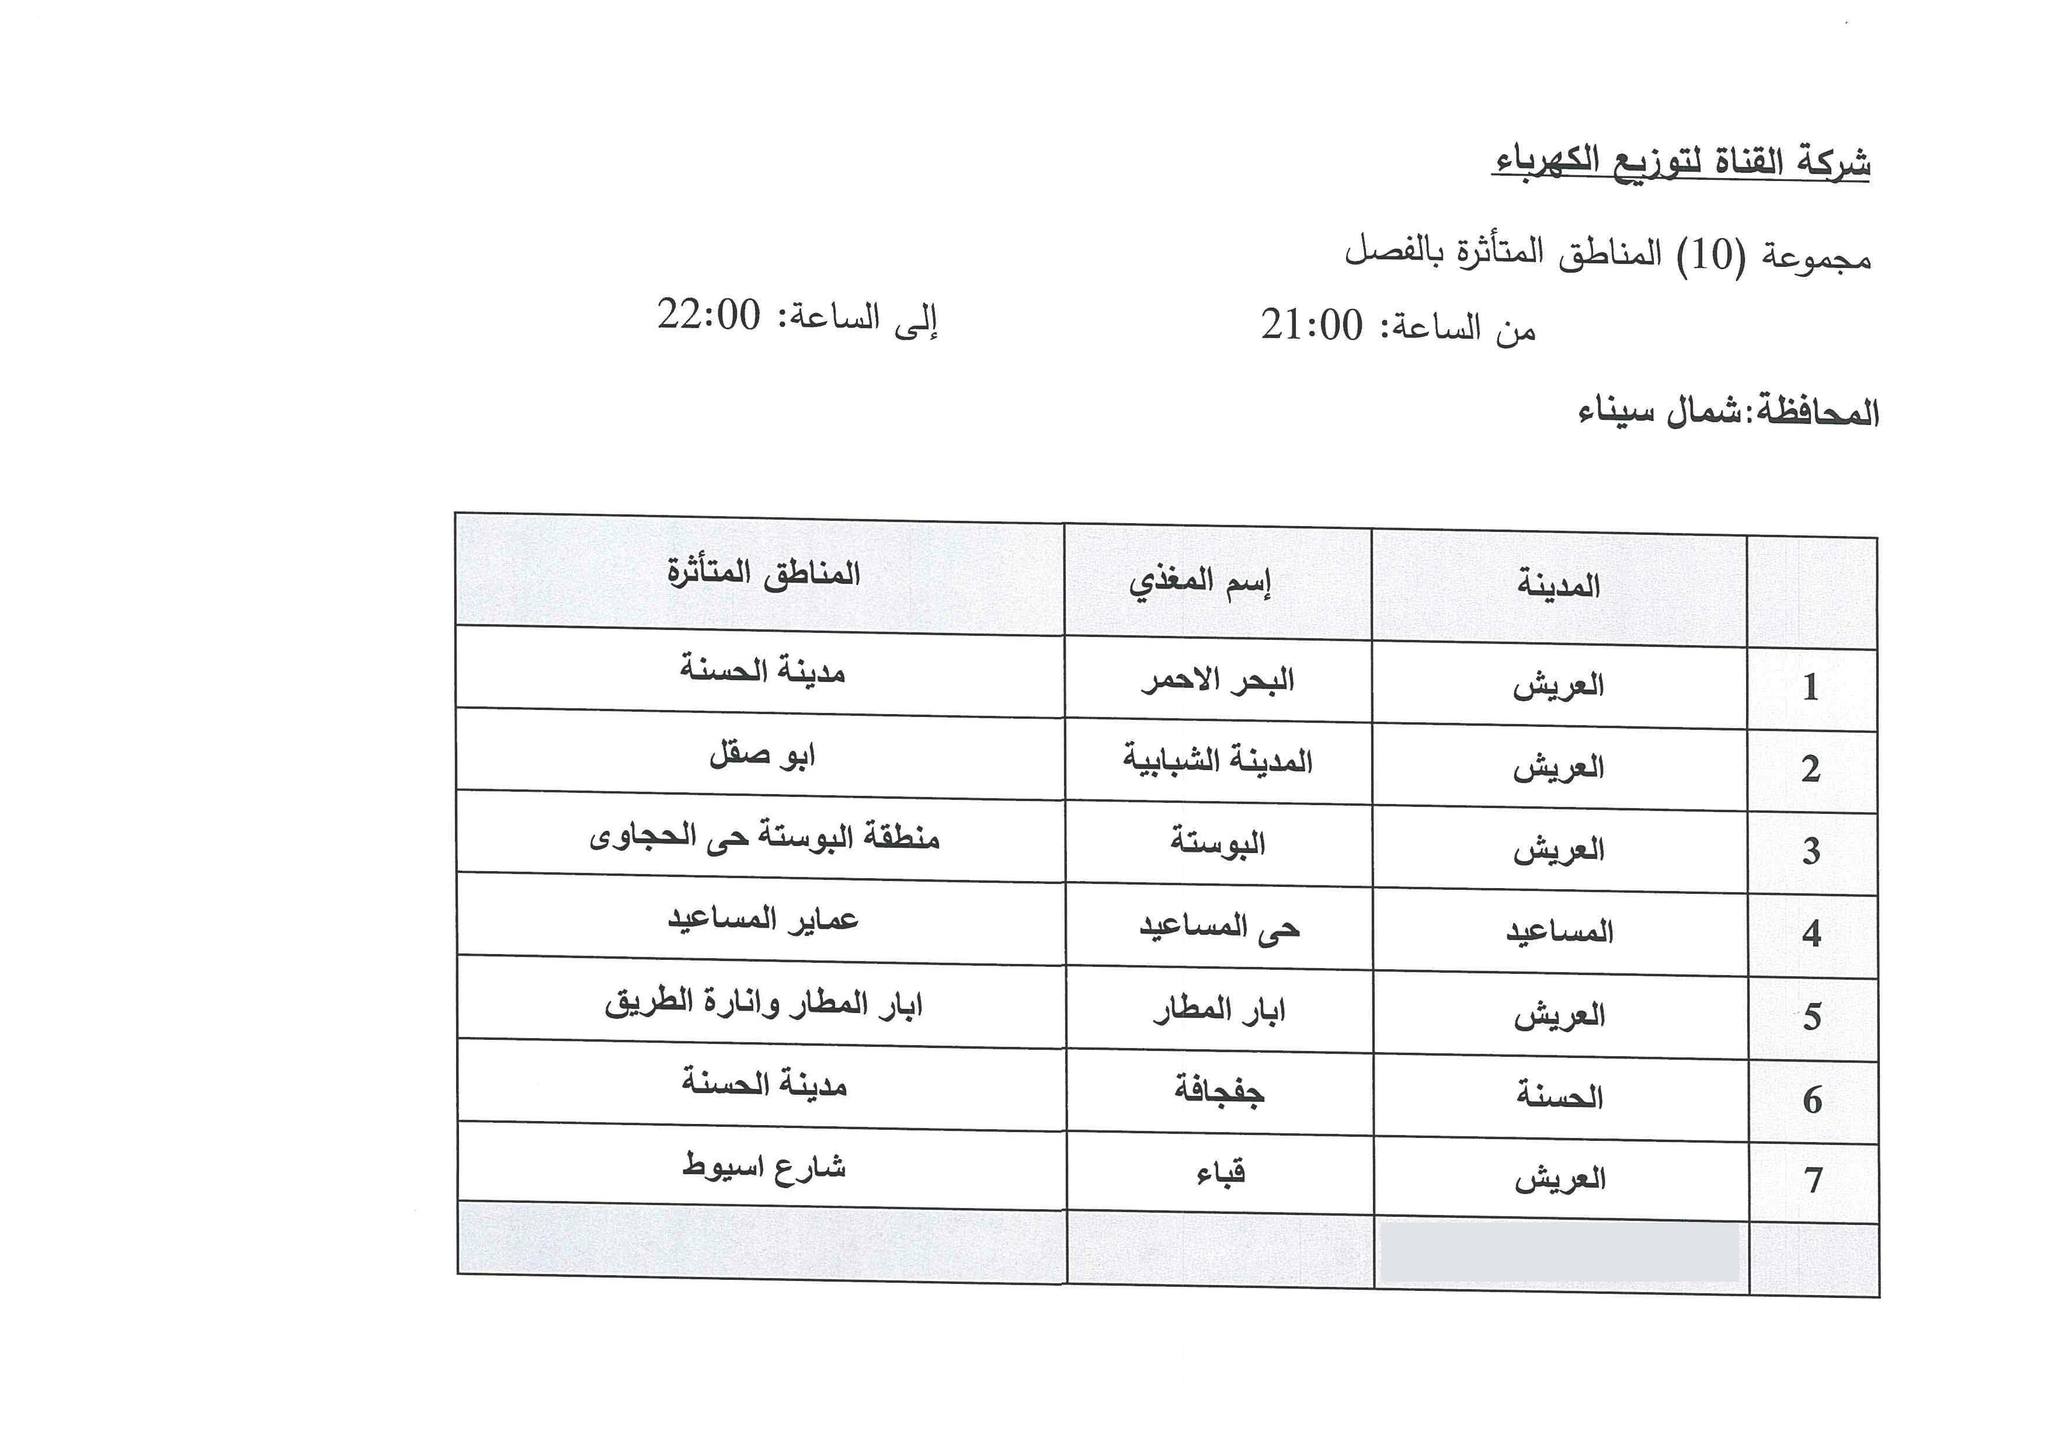 جدول مواعيد تخفيف الأحمال الكهربائية فى محافظة شمال سيناء (7)